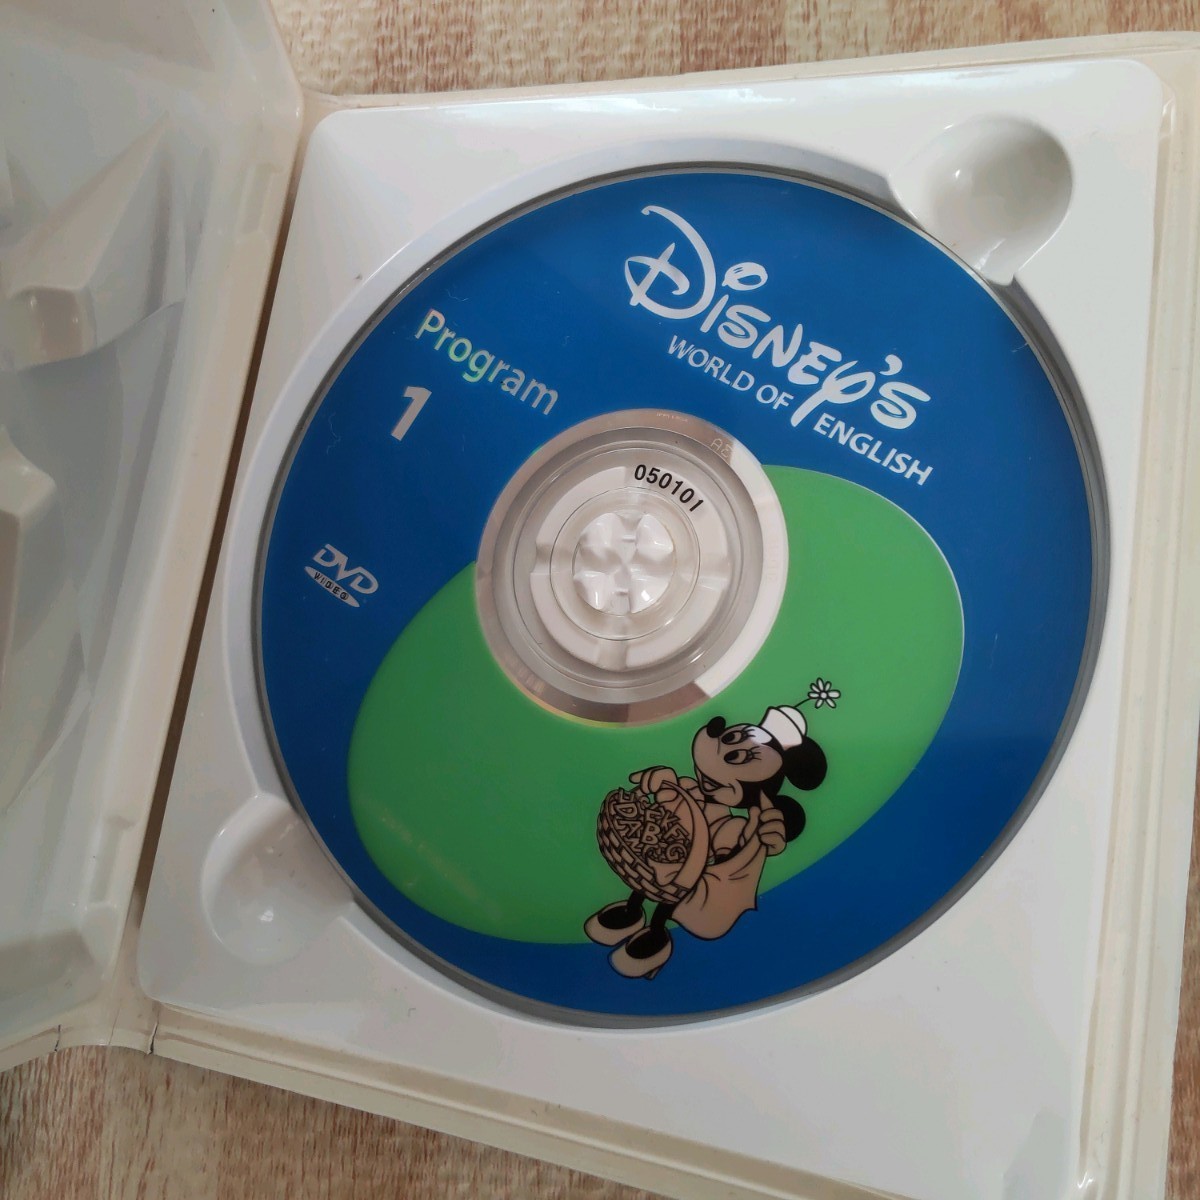 ディズニー英語システム ストレートプレイ DVD オリエンテーションDVD